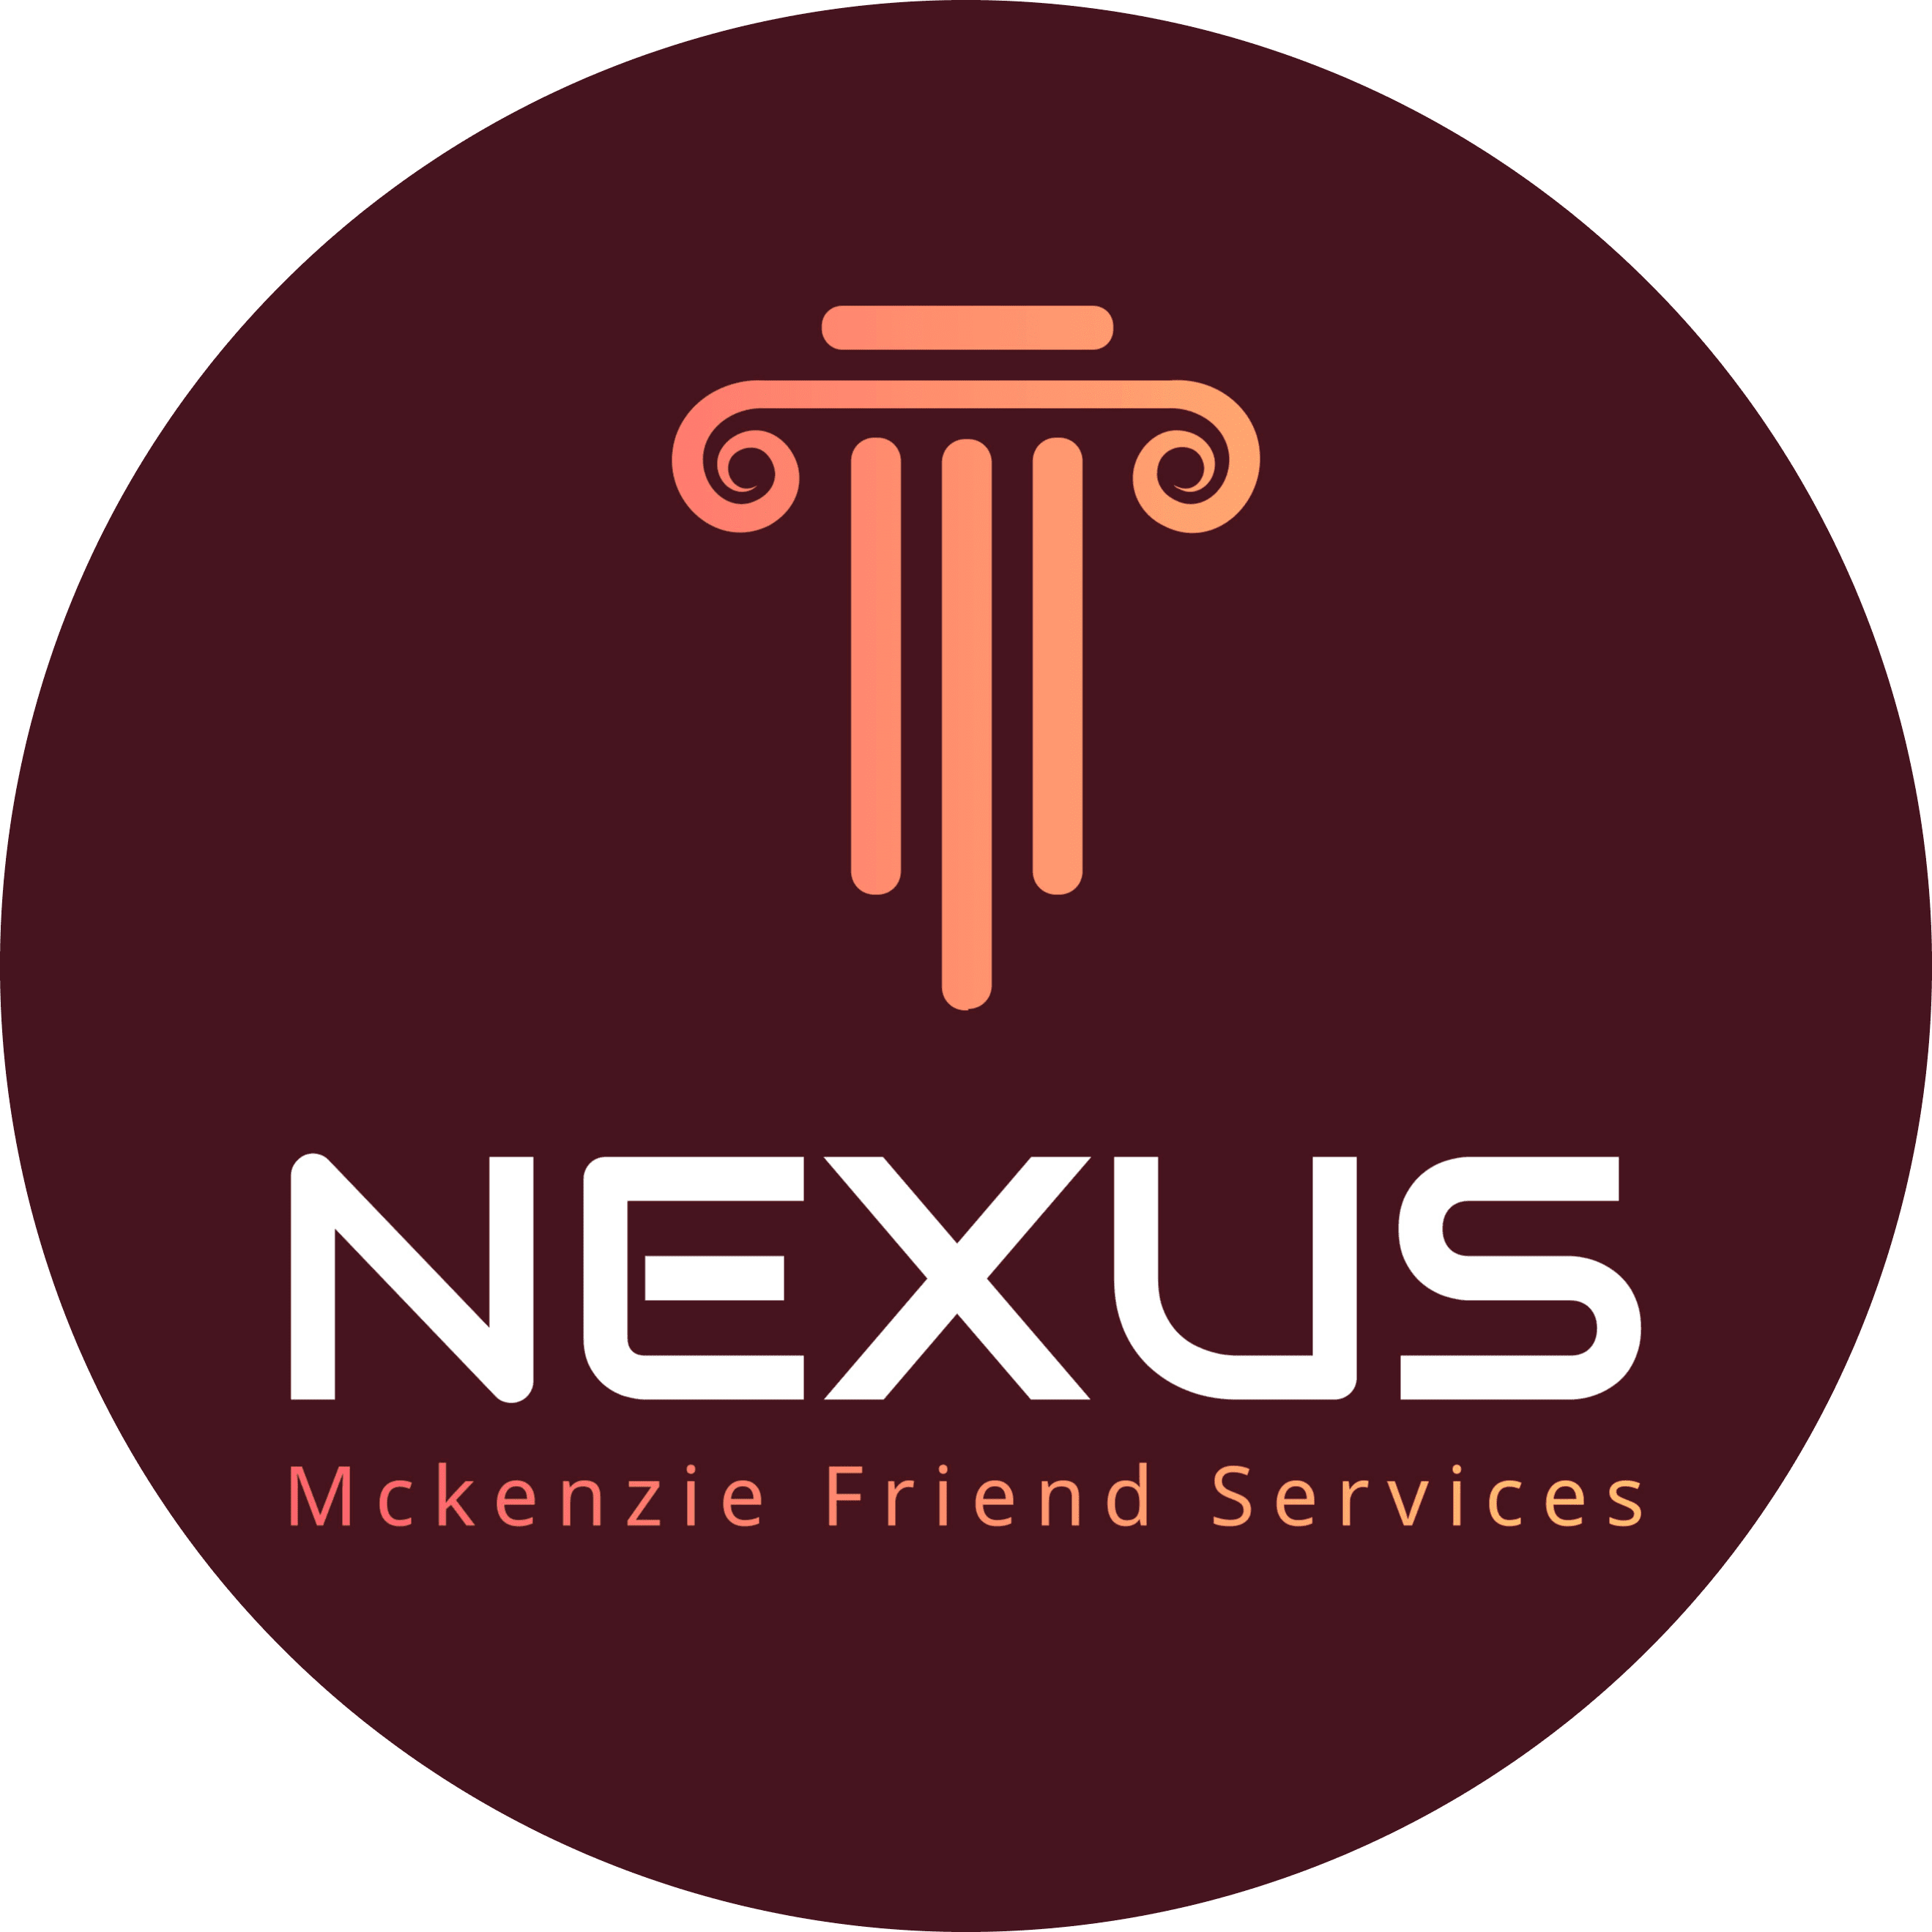 NEXUS Mckenzie Friend Services